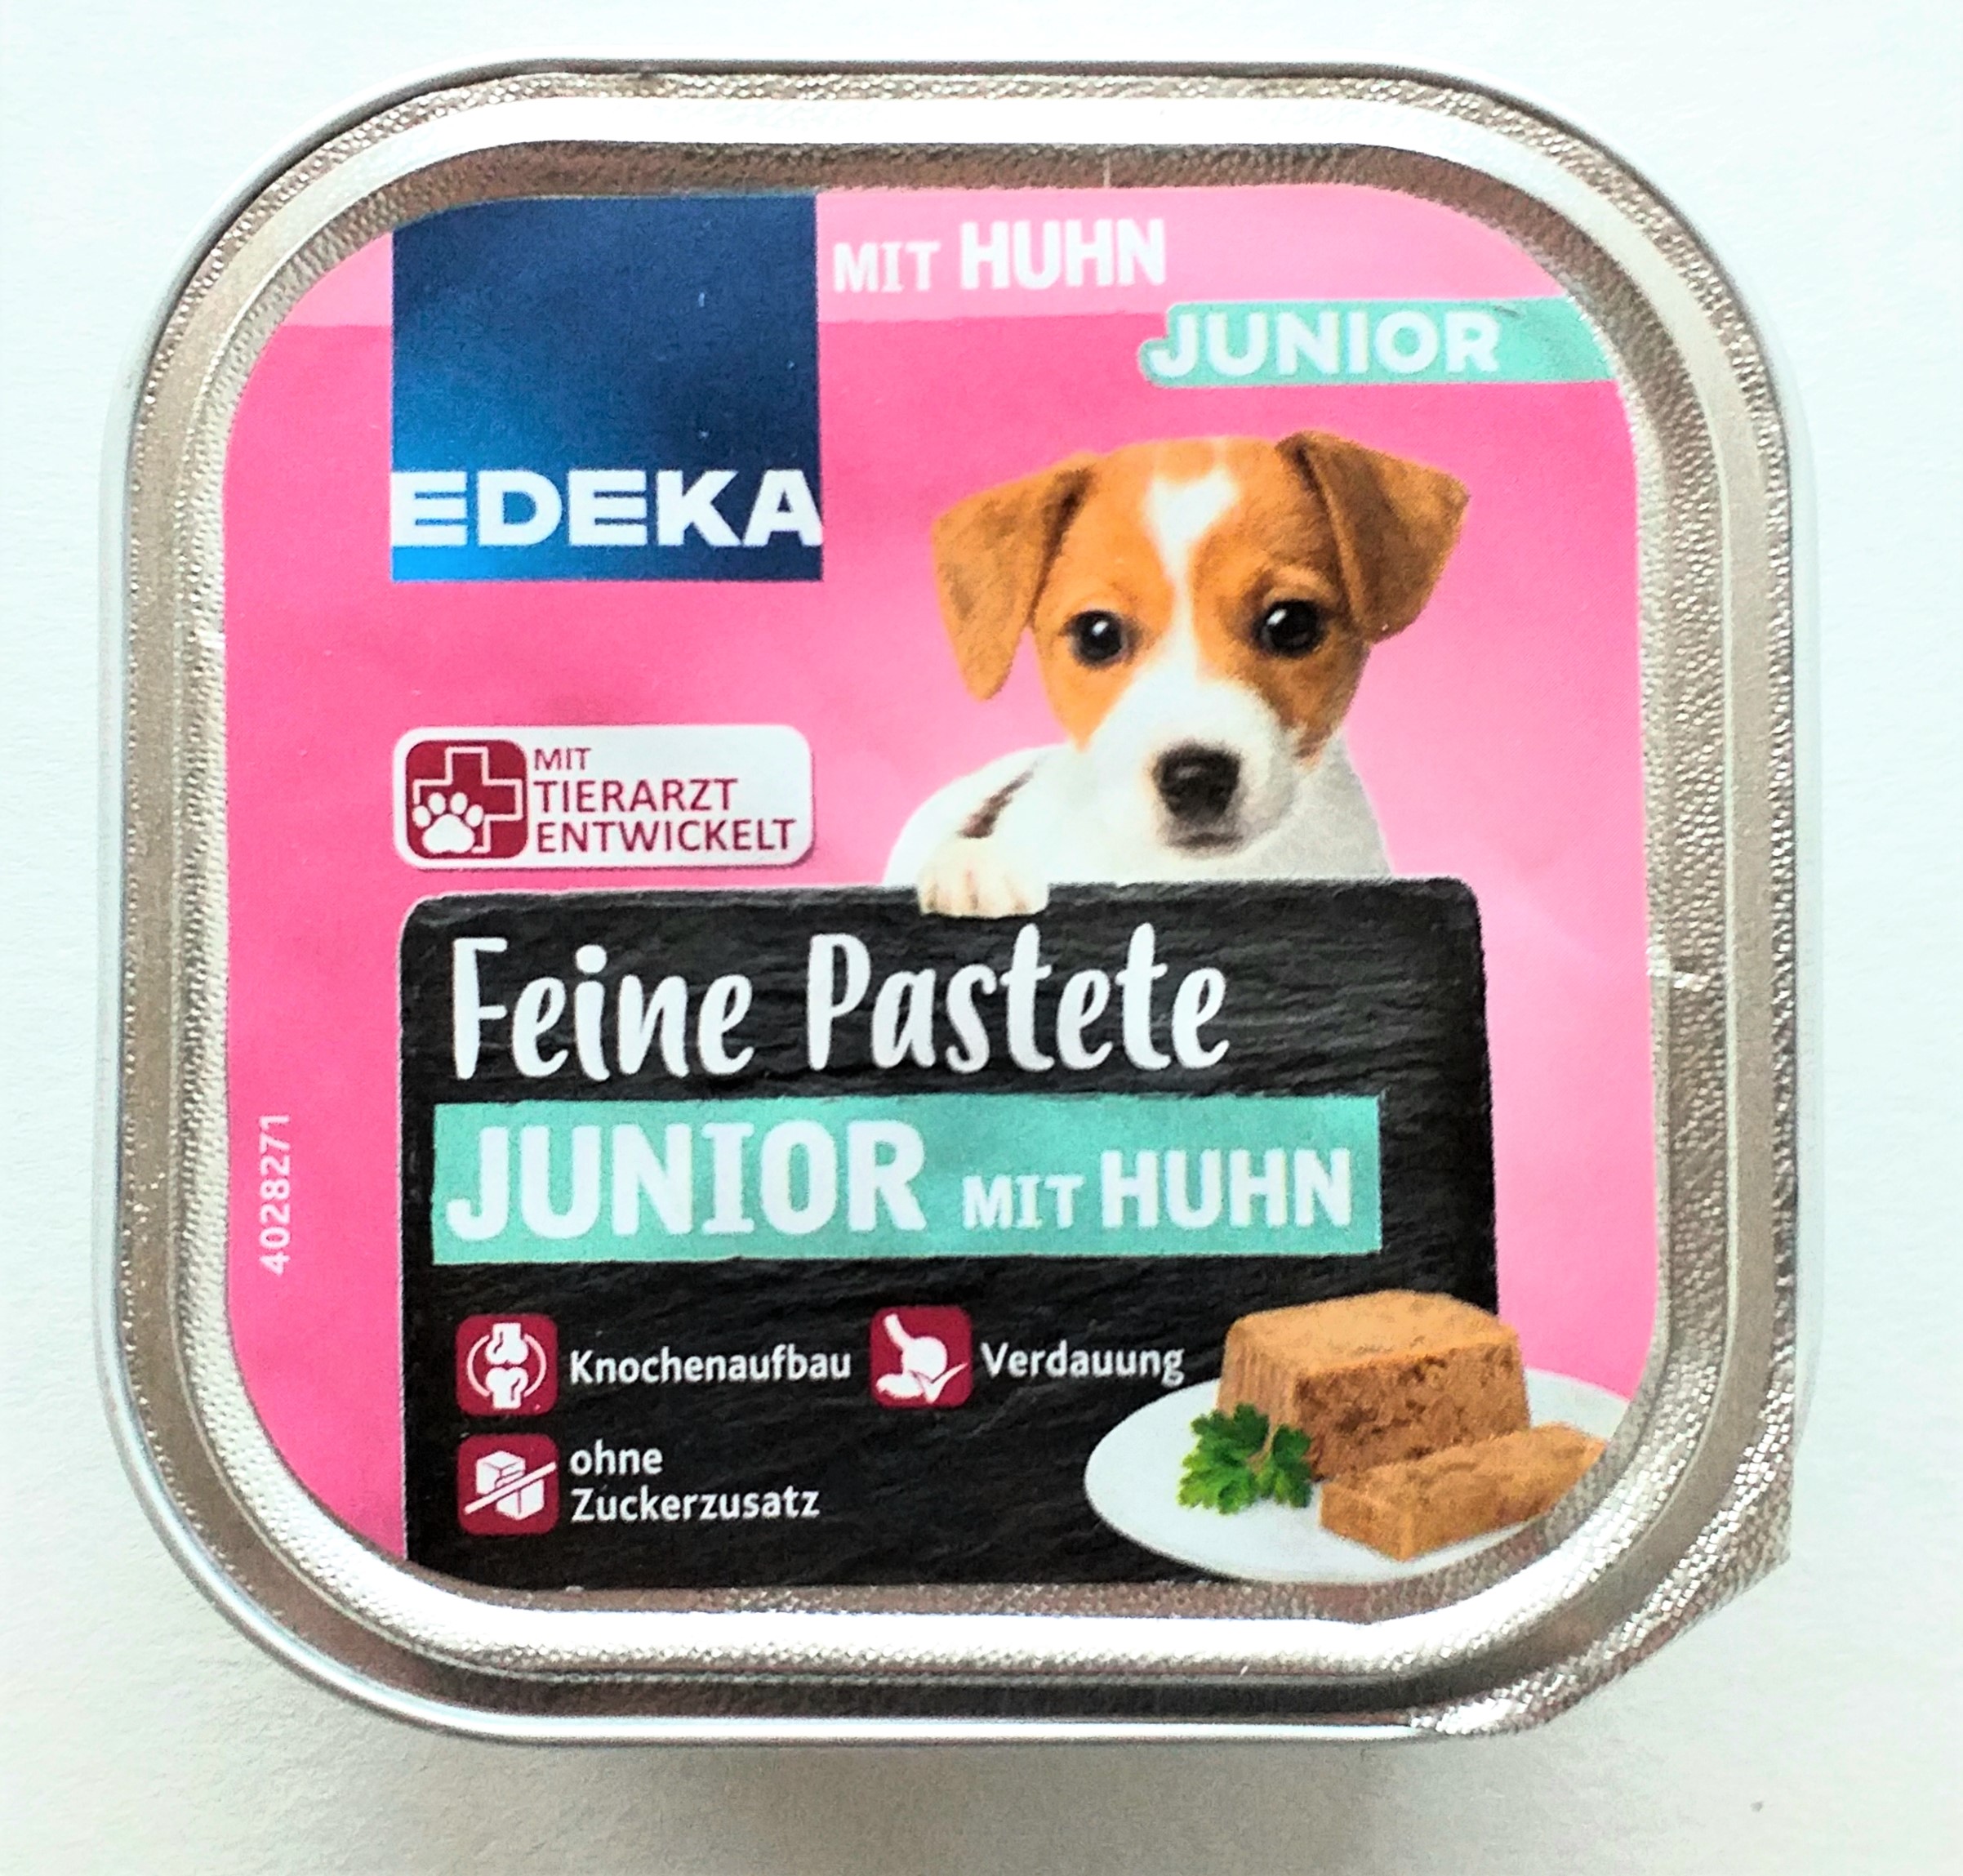 EDEKA Feine Pastete Junior mit Huhn 11 x 150g Packung